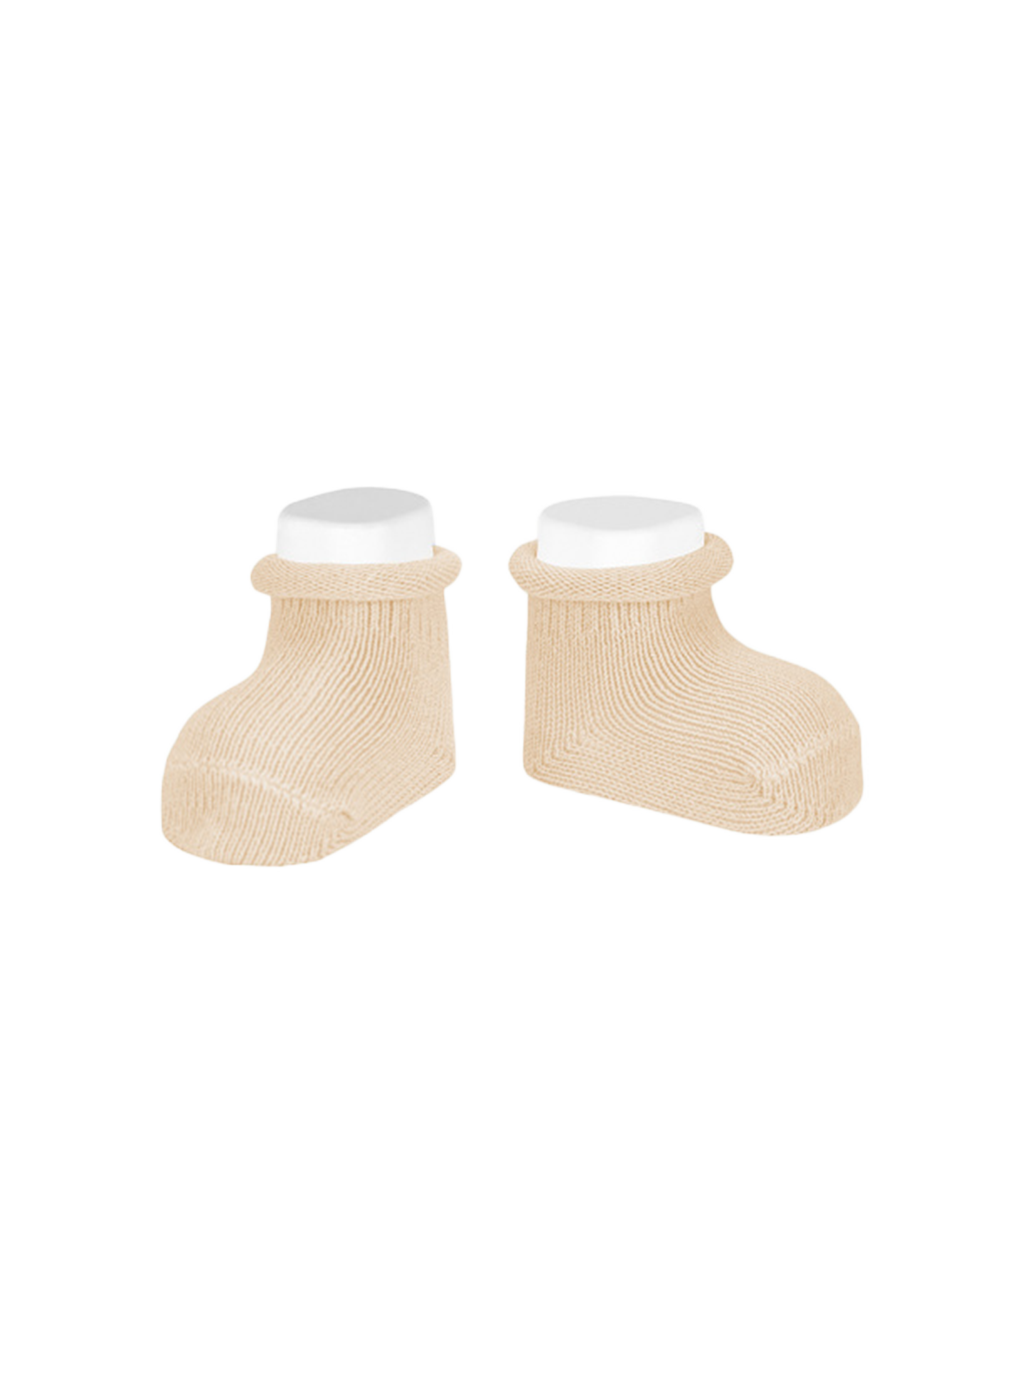 Calzini per neonati in cotone